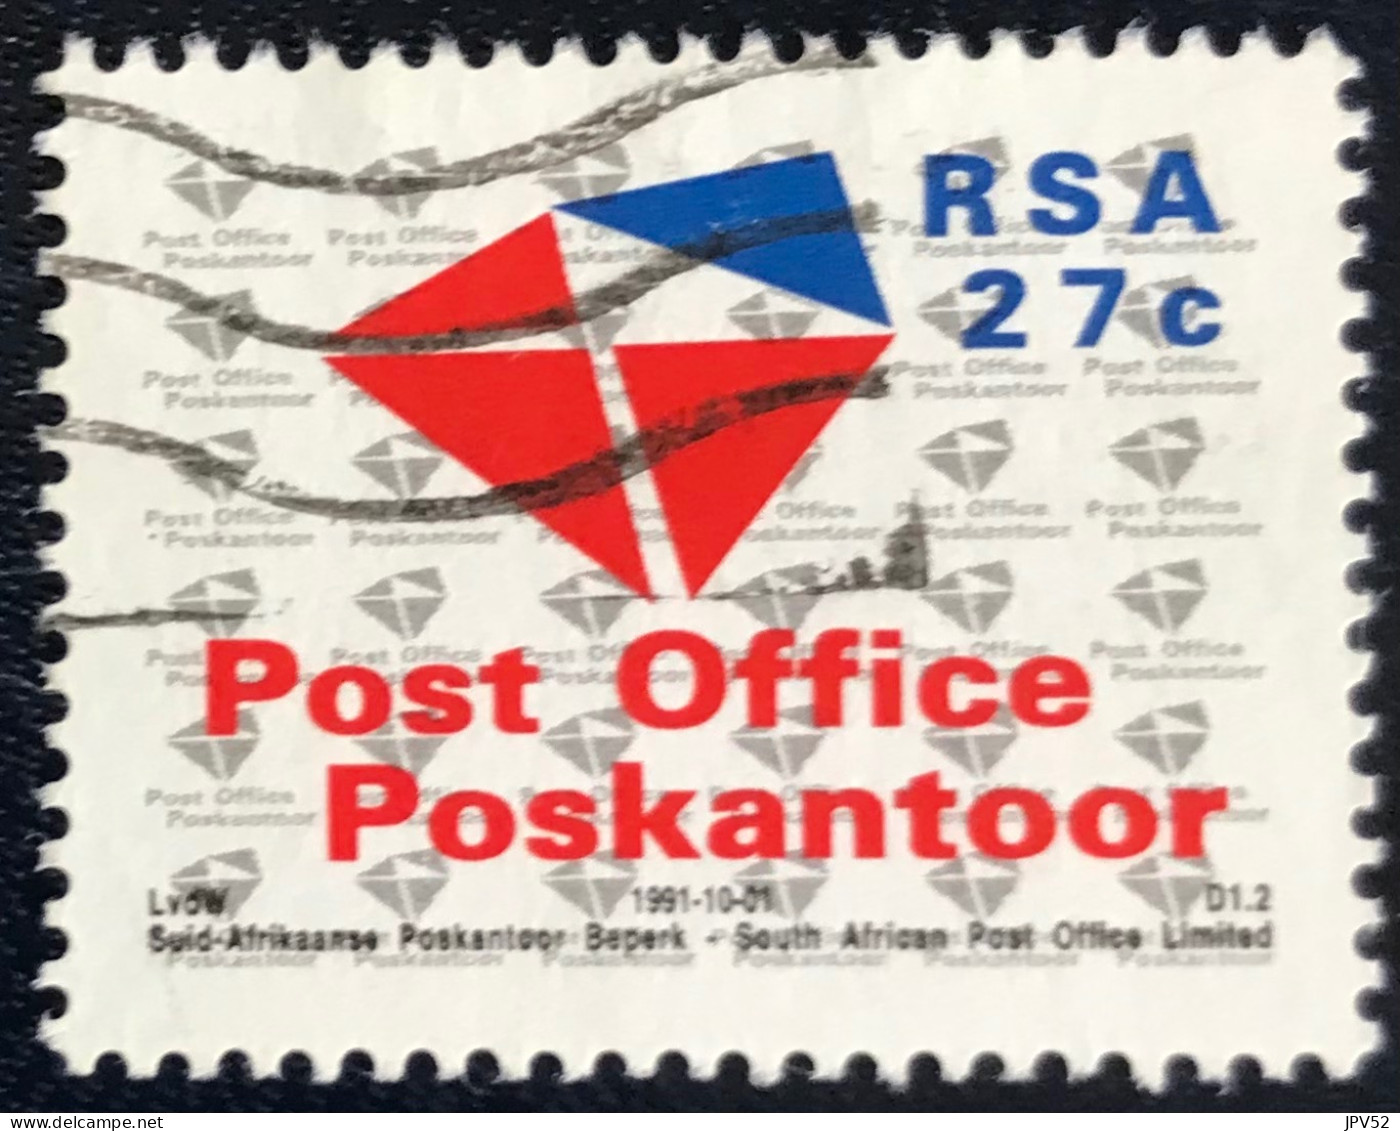 RSA - South Africa - Suid-Afrika  - C18/6 - 1991 - (°)used - Michel 823 - Nieuwe Naam Postdienst - Gebruikt